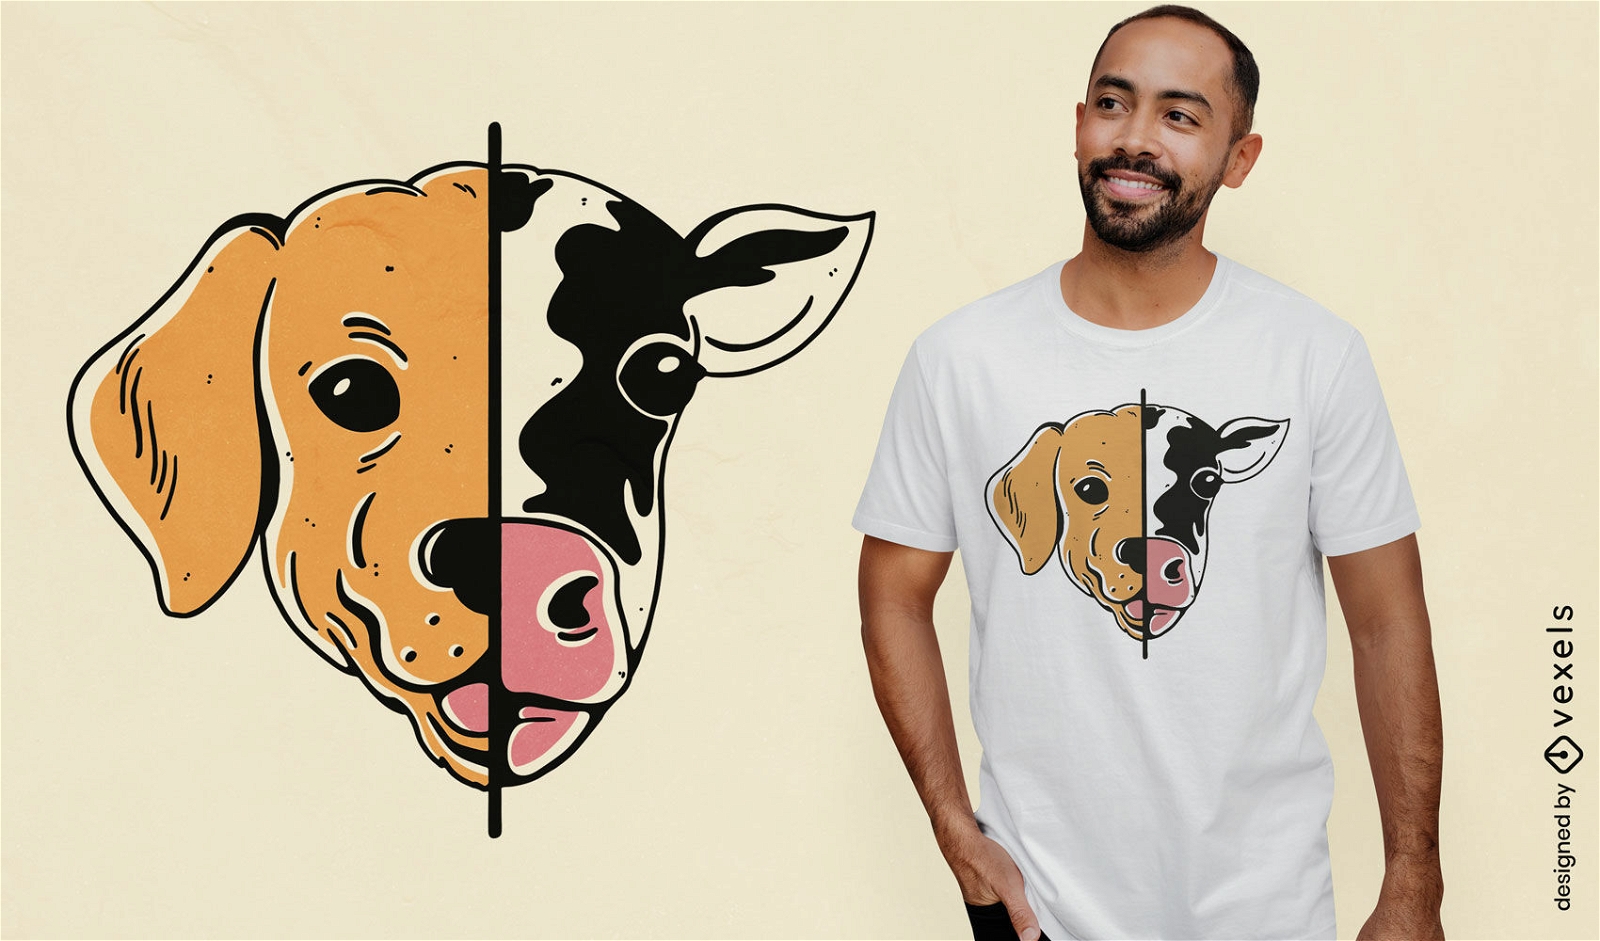 Dise?o de camiseta mitad vaca mitad perro